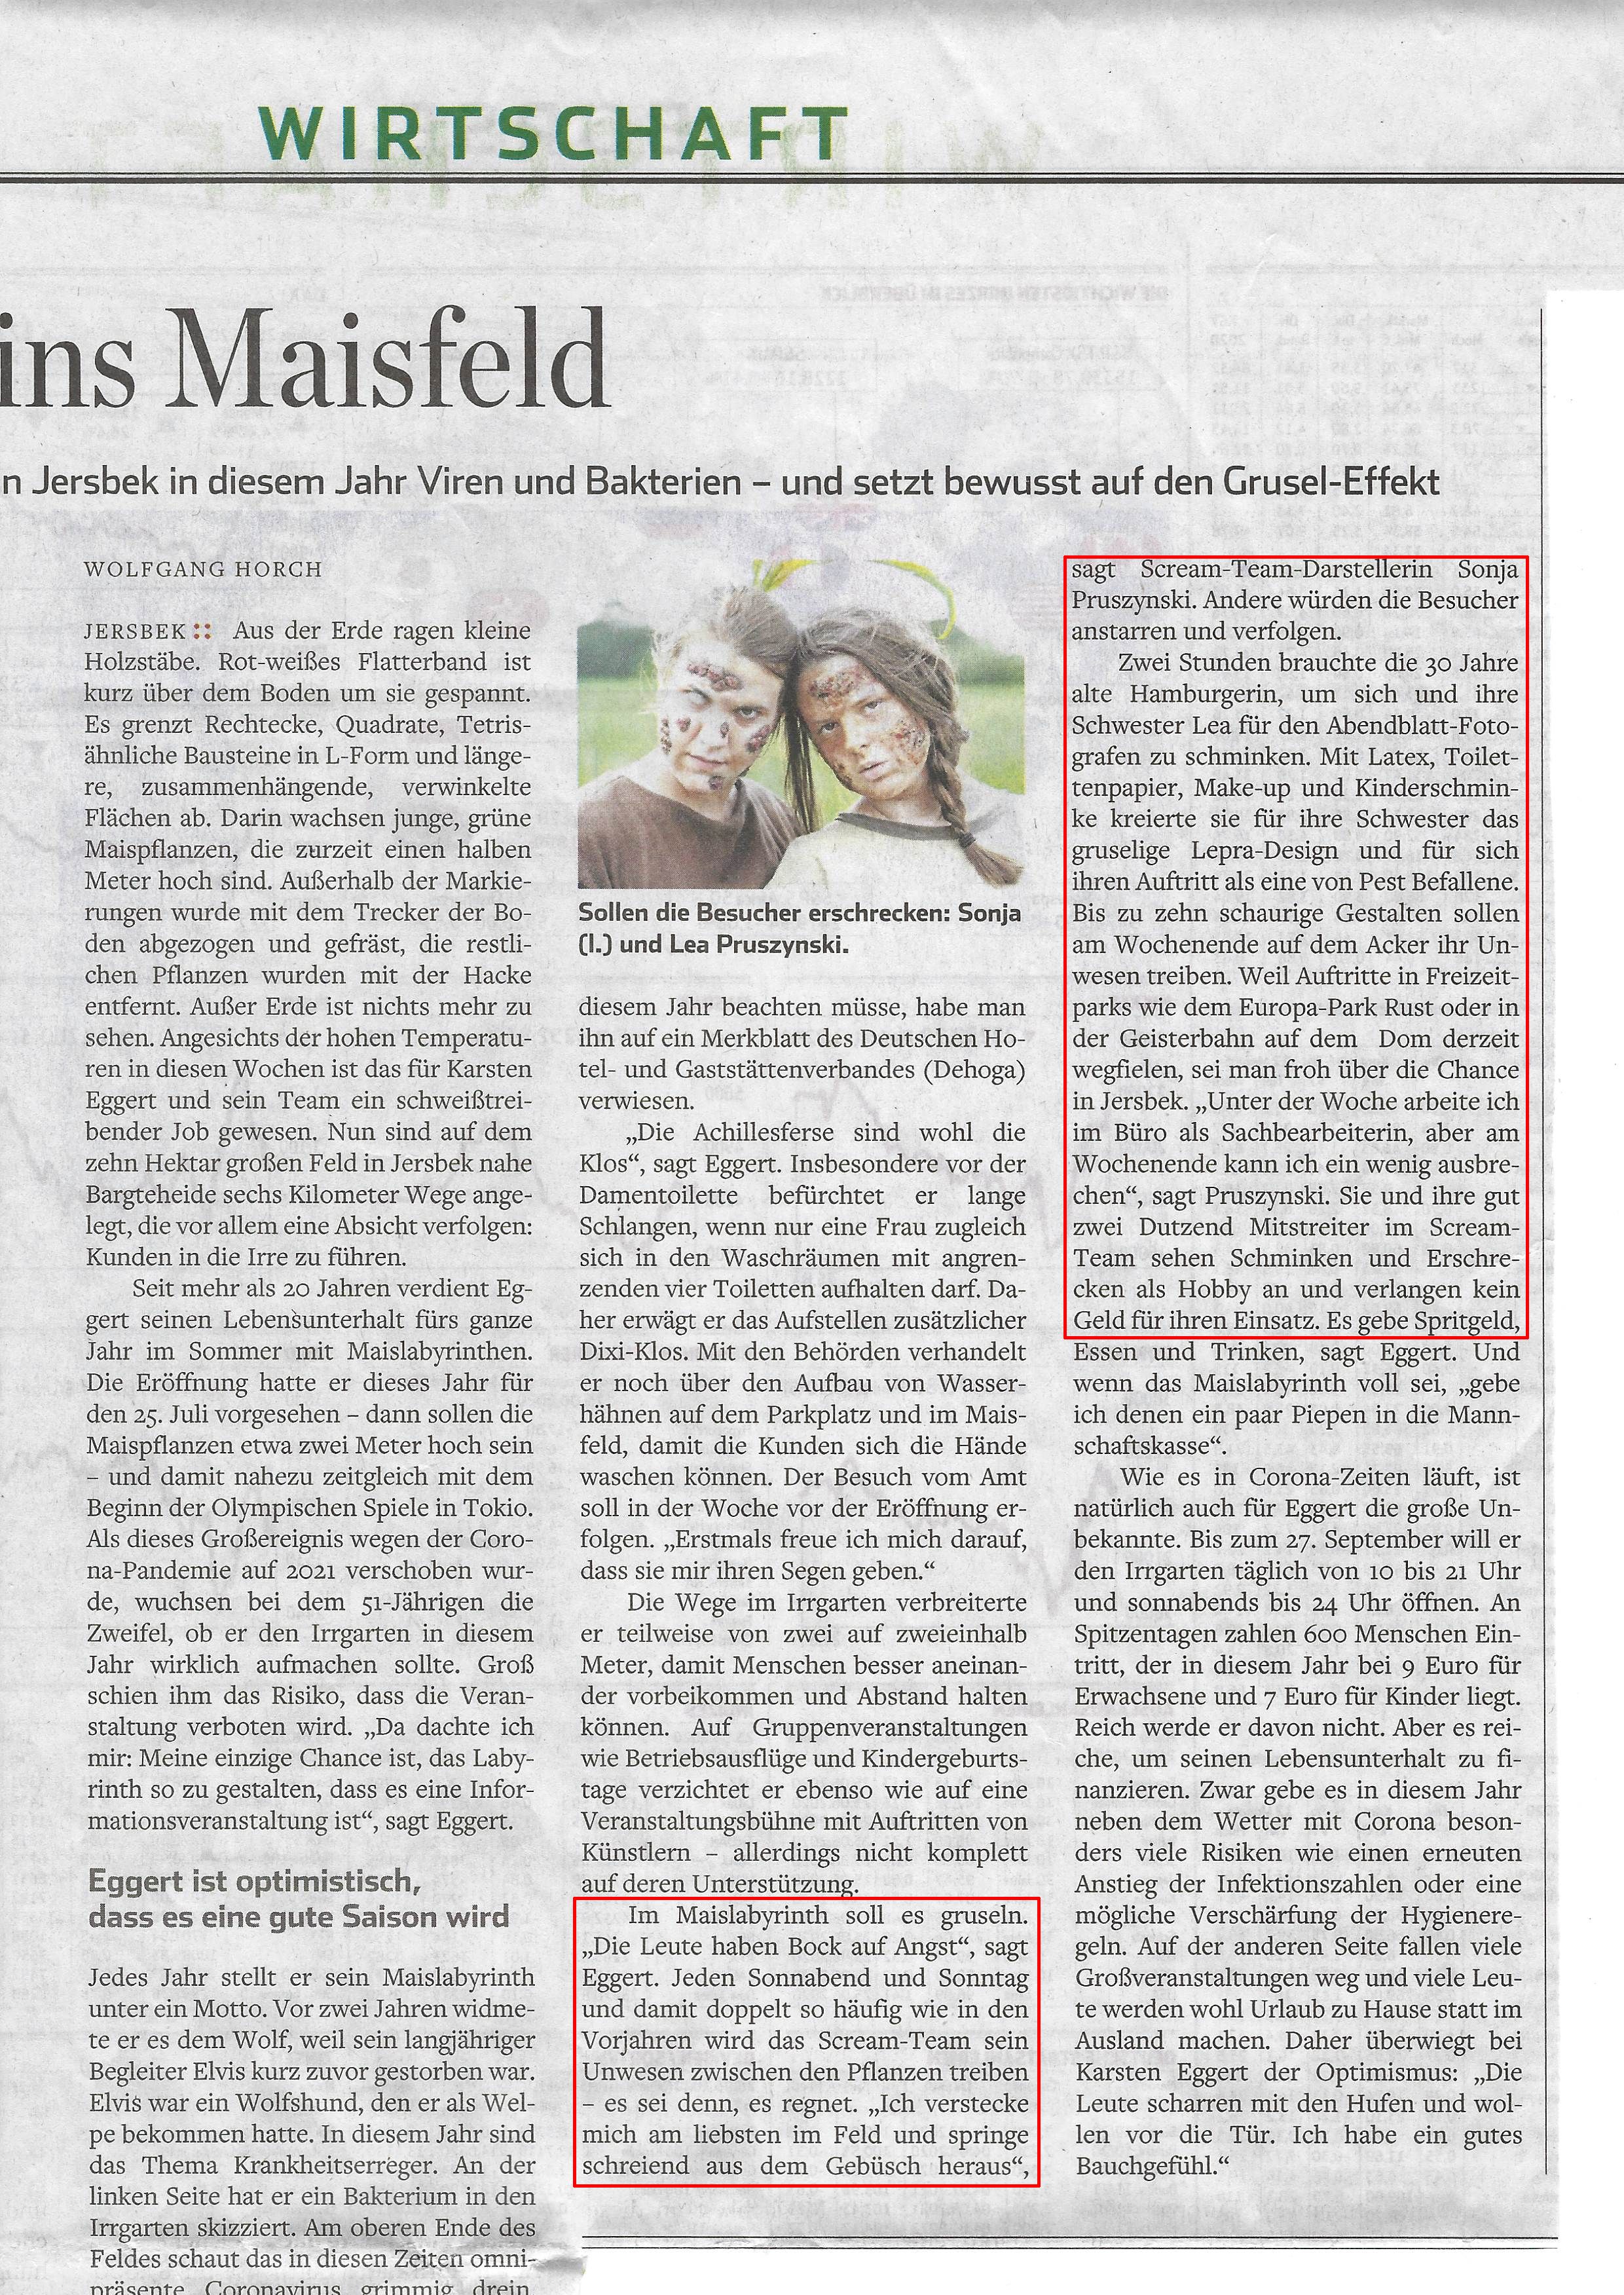 Bild des Zeitungsartikel aus dem Hamburger Abendblatt mit dem Titel Zur Corona-Jagd ins Maisfeld vom 26.06.2020 über das ScreamTeam